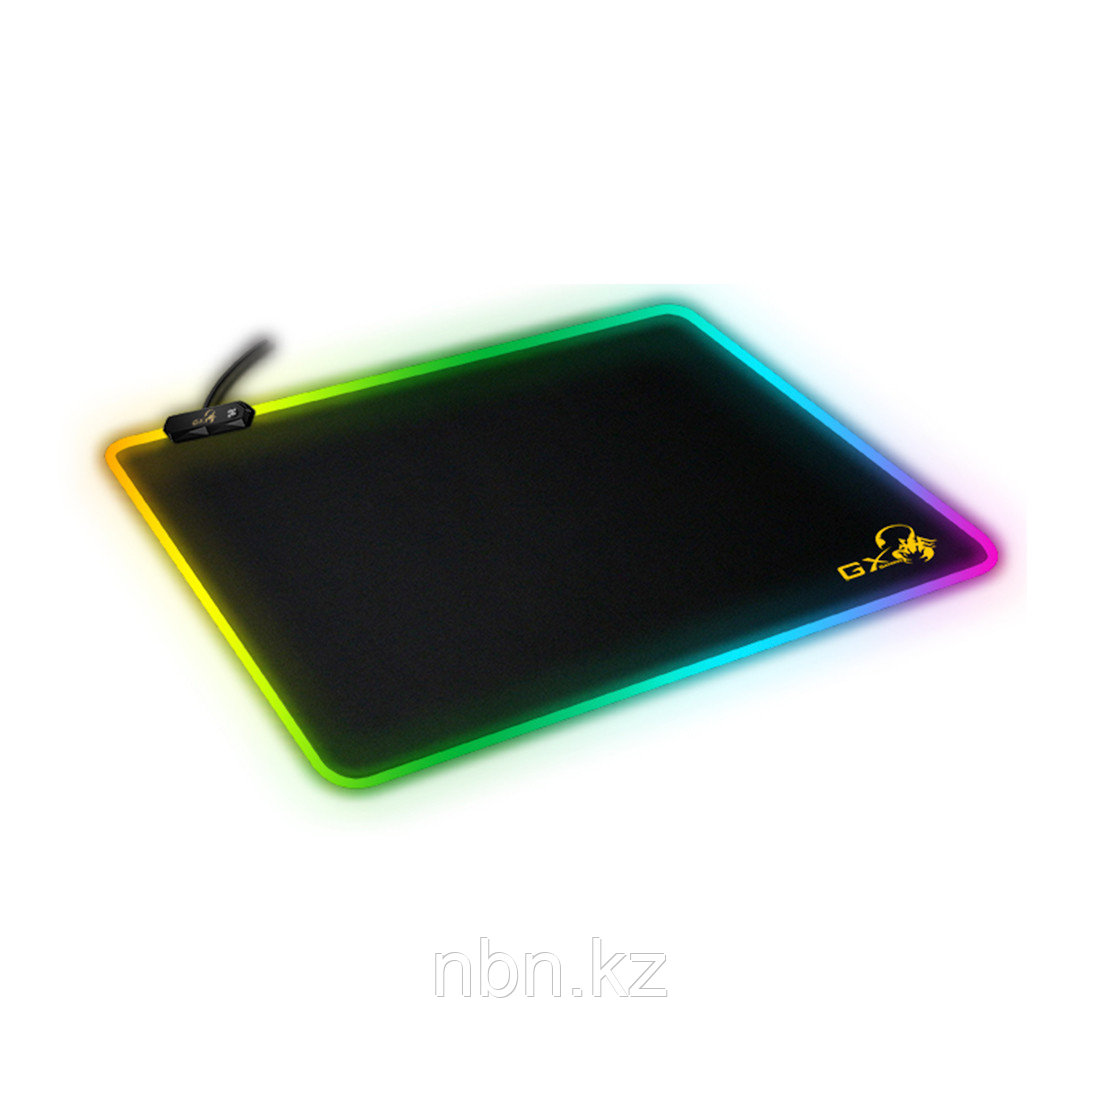 Коврик для компьютерной мыши Genius GX-Pad 300S RGB, фото 1